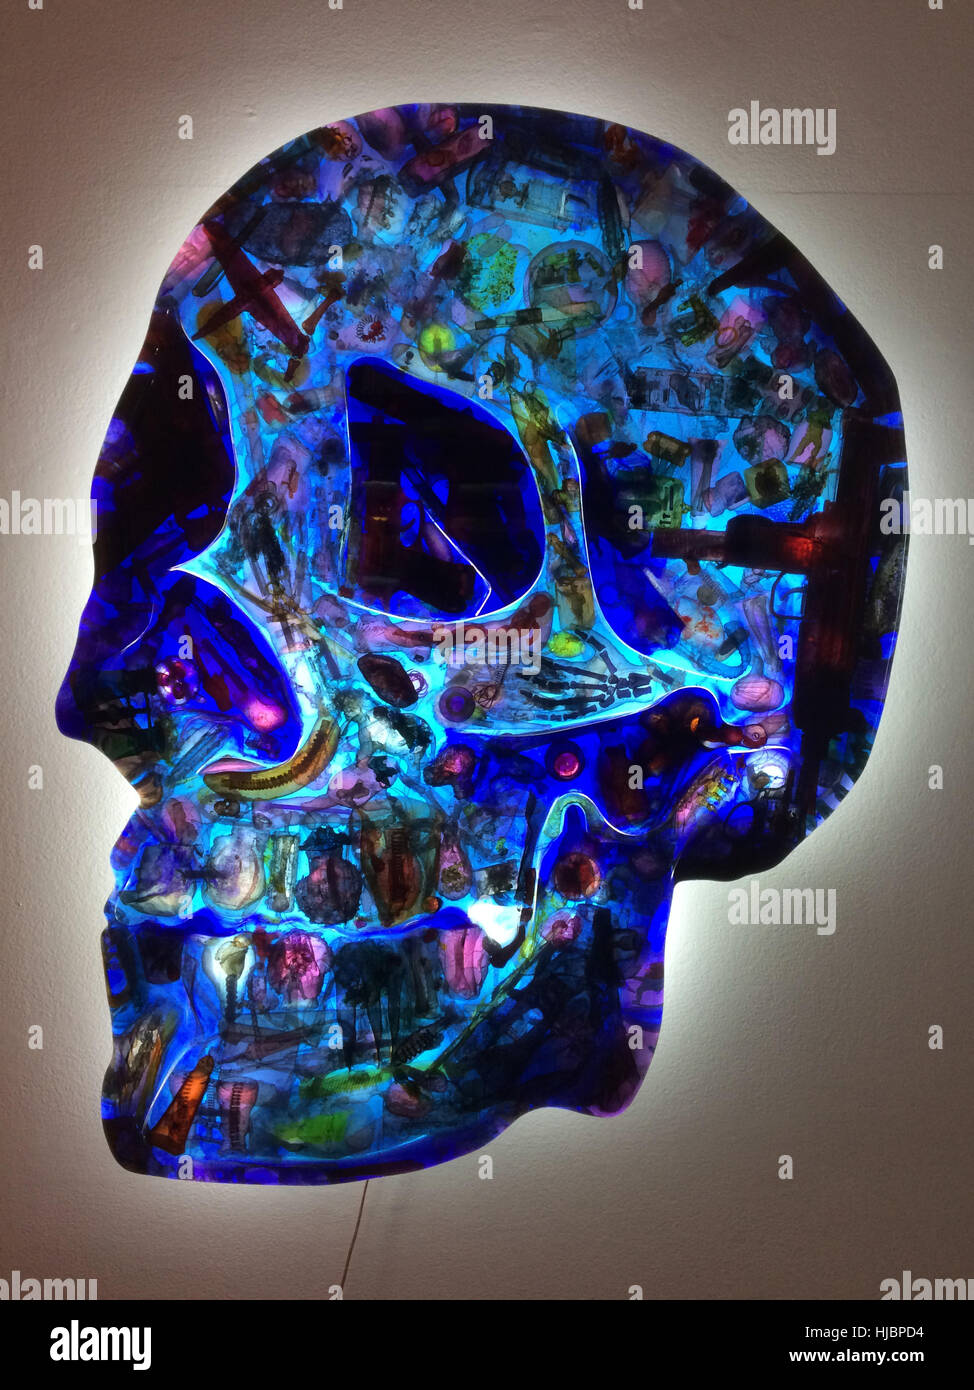 Illustrazione di vetro il cranio da Czech visual artist David Cerny a sua mostra nella galleria DSC a Praga, Repubblica Ceca. La mostra viene eseguito fino al 26 novembre 2016. Foto Stock